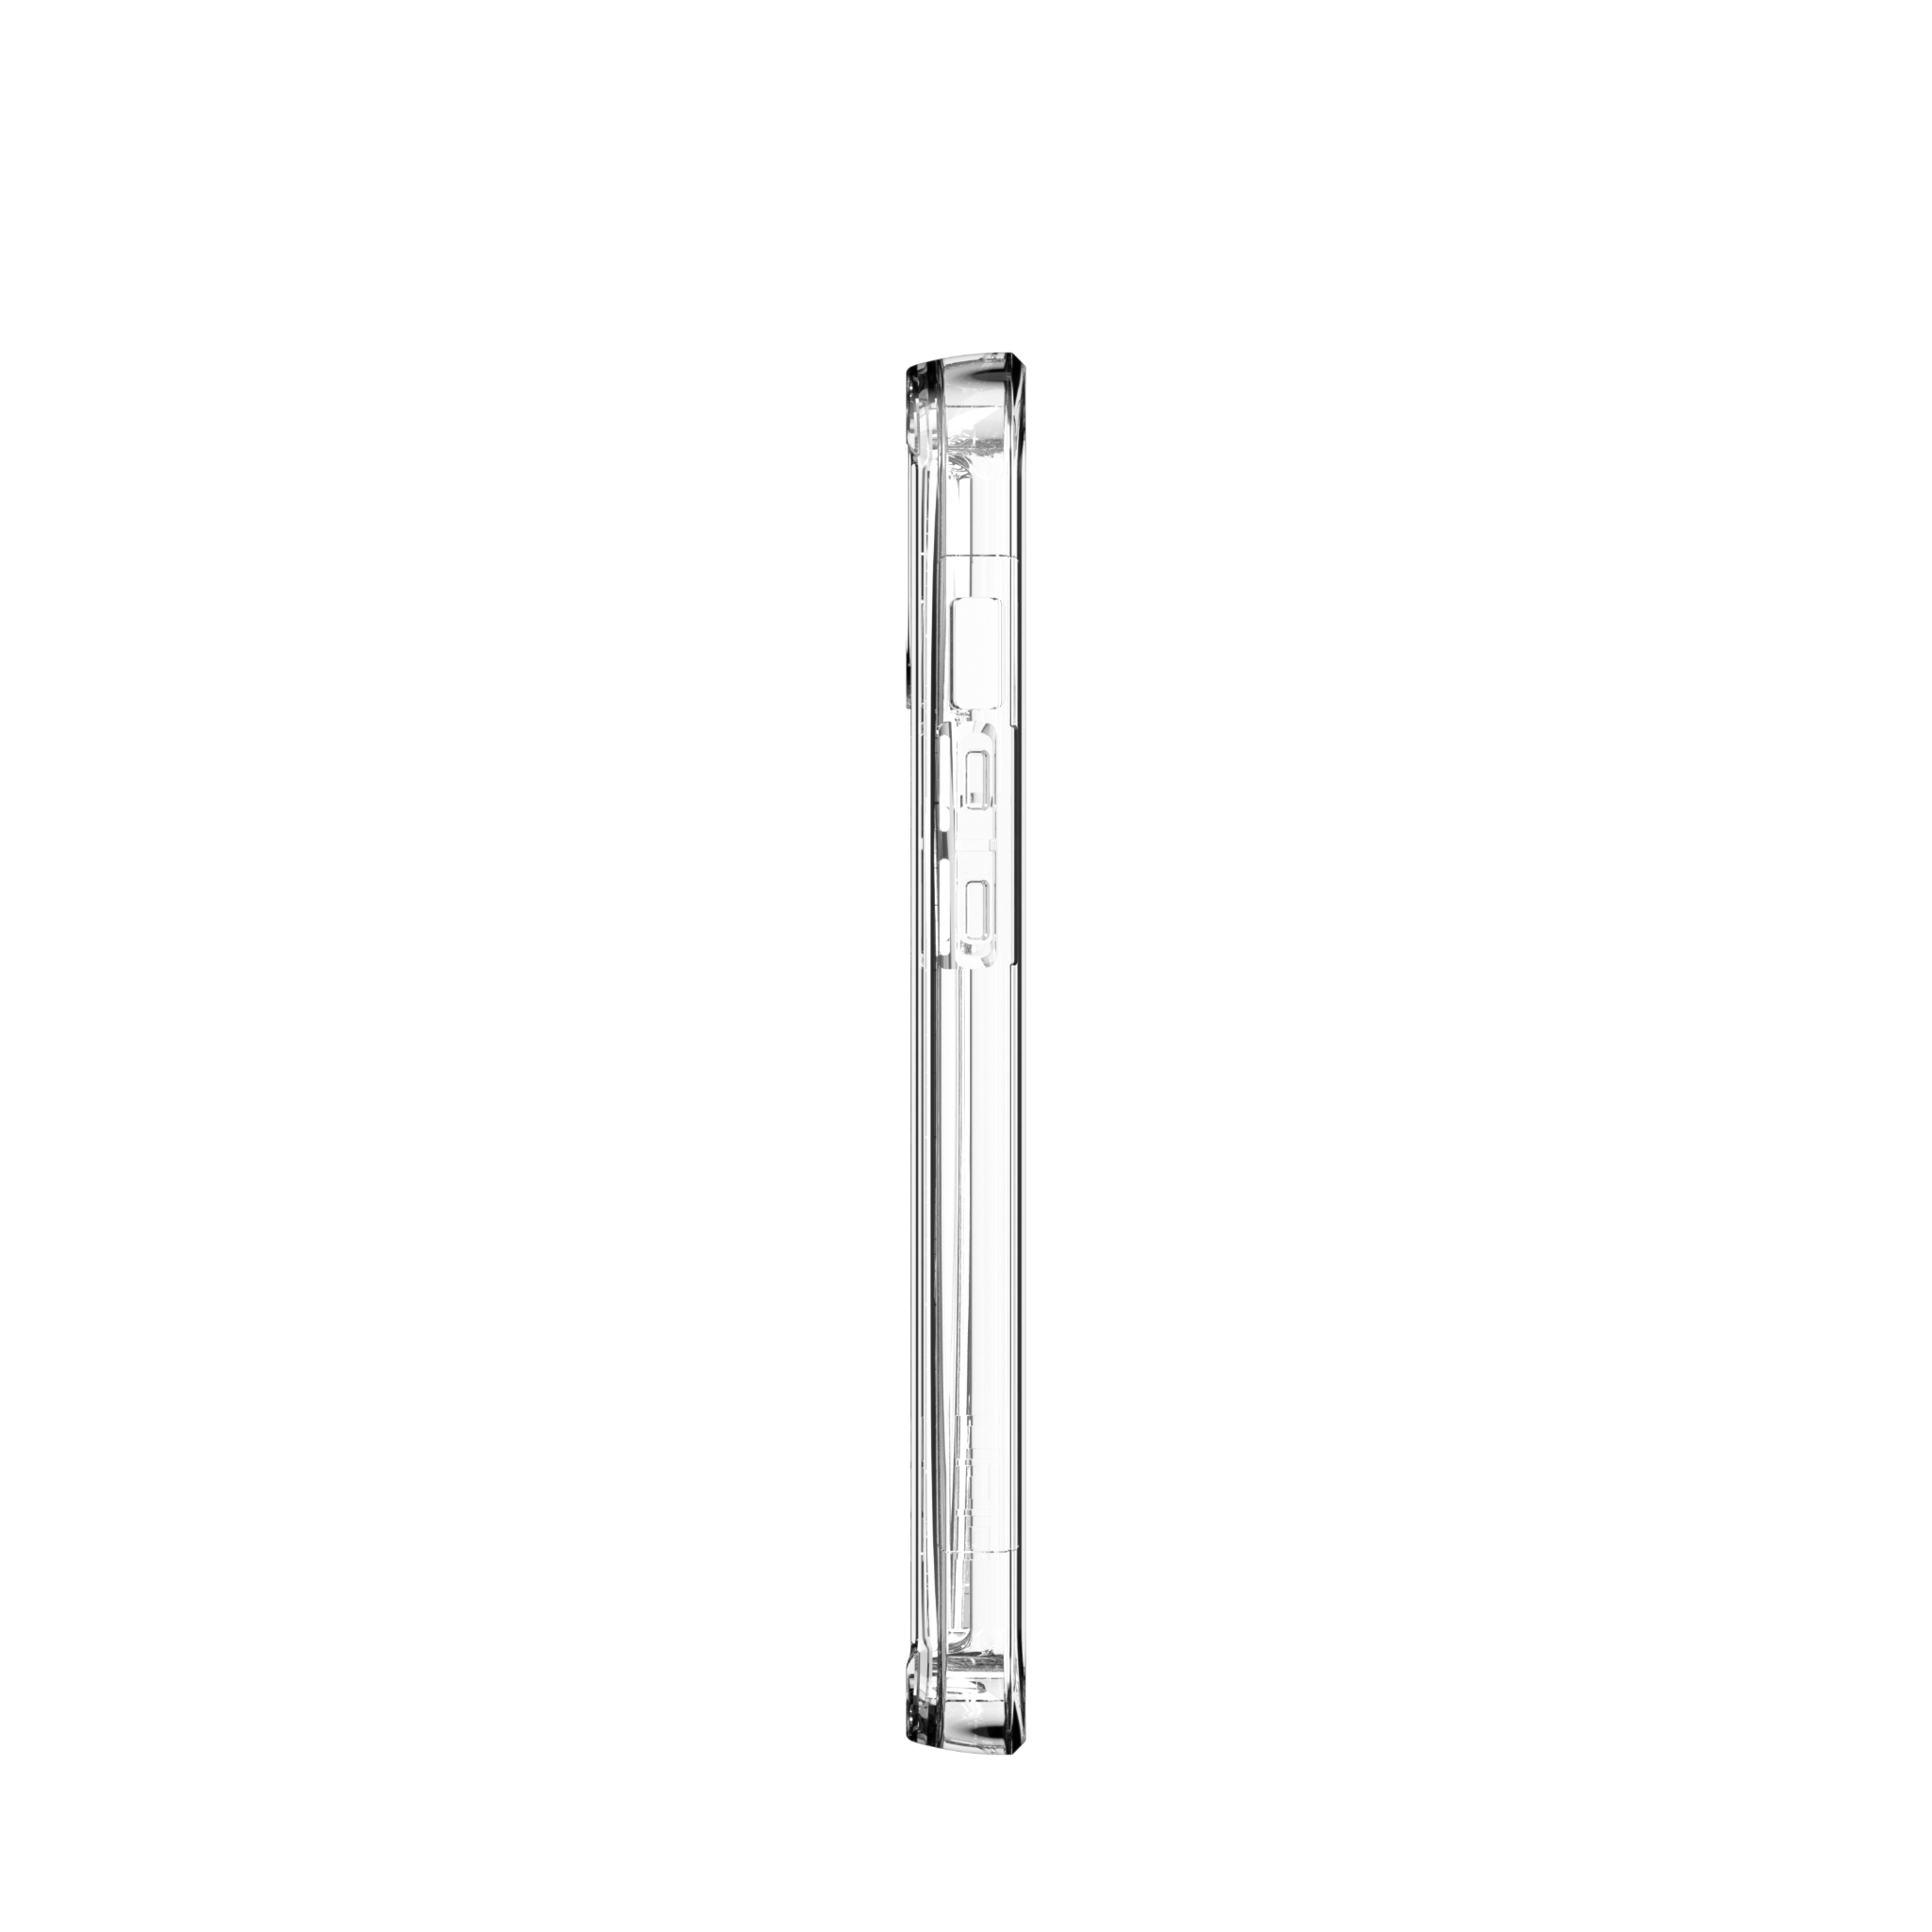  Ốp lưng Plyo cho iPhone 13 [6.1 inch] 